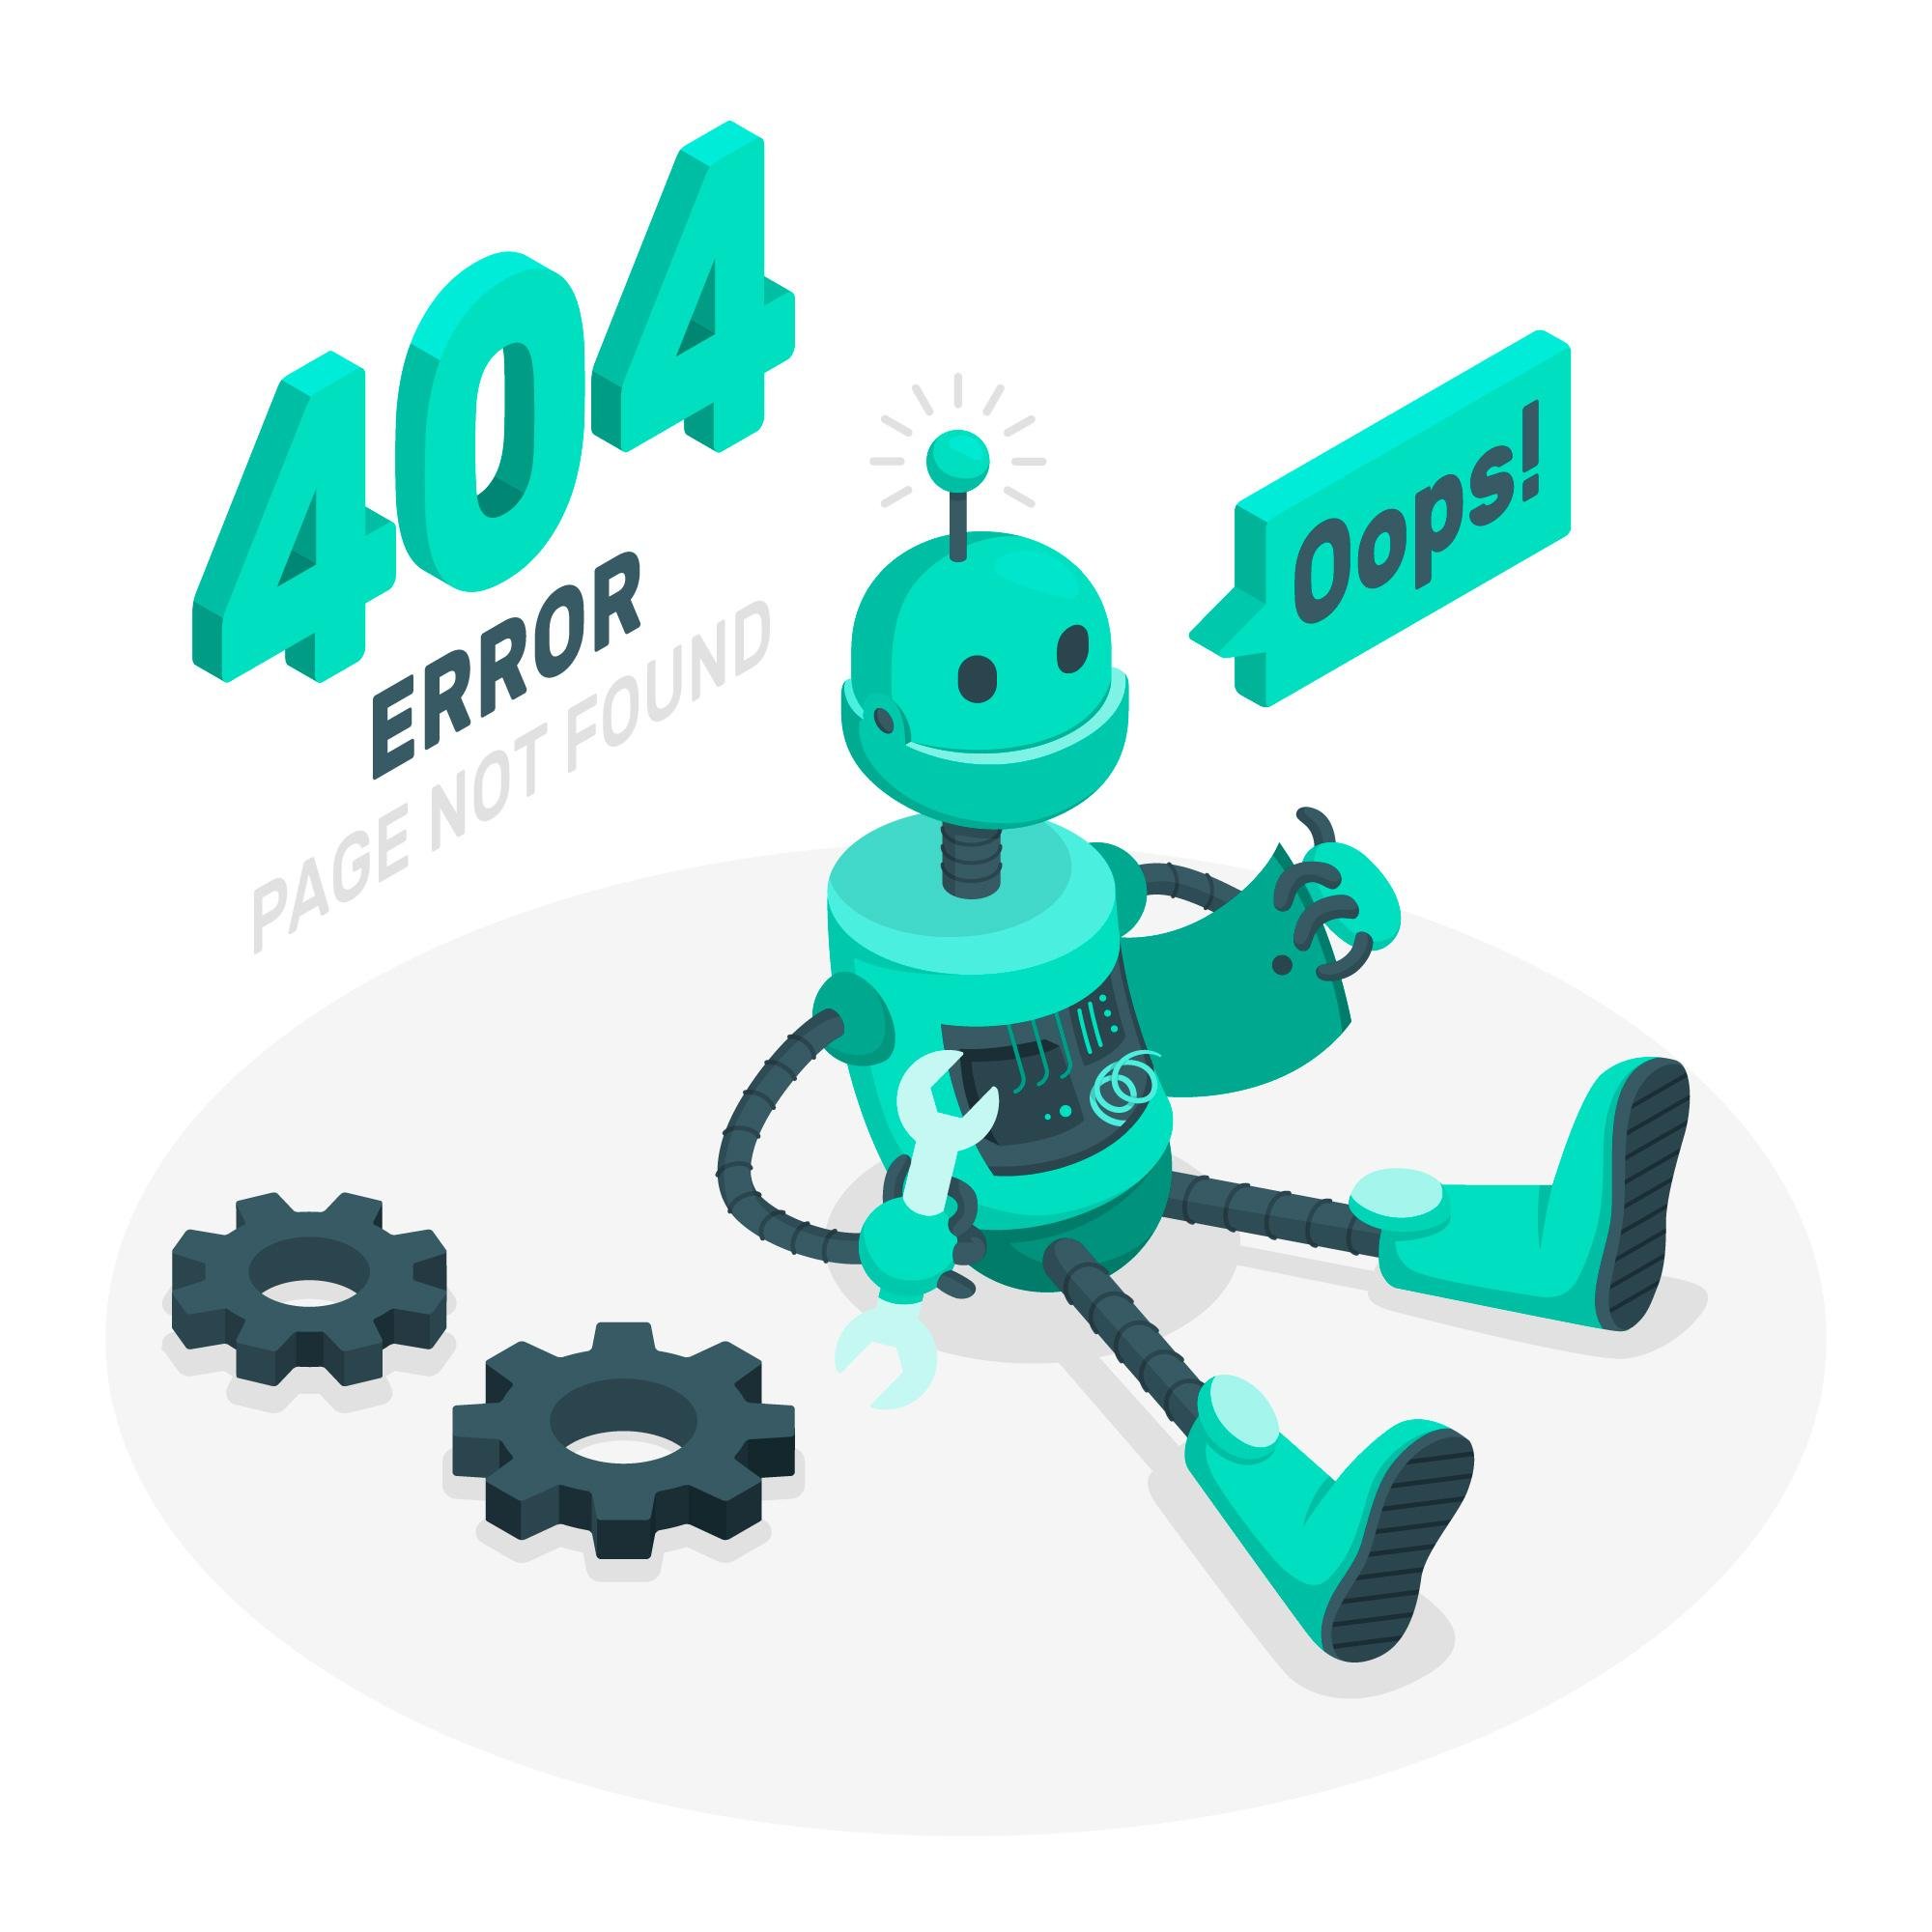 404 Error - Página no encontrada